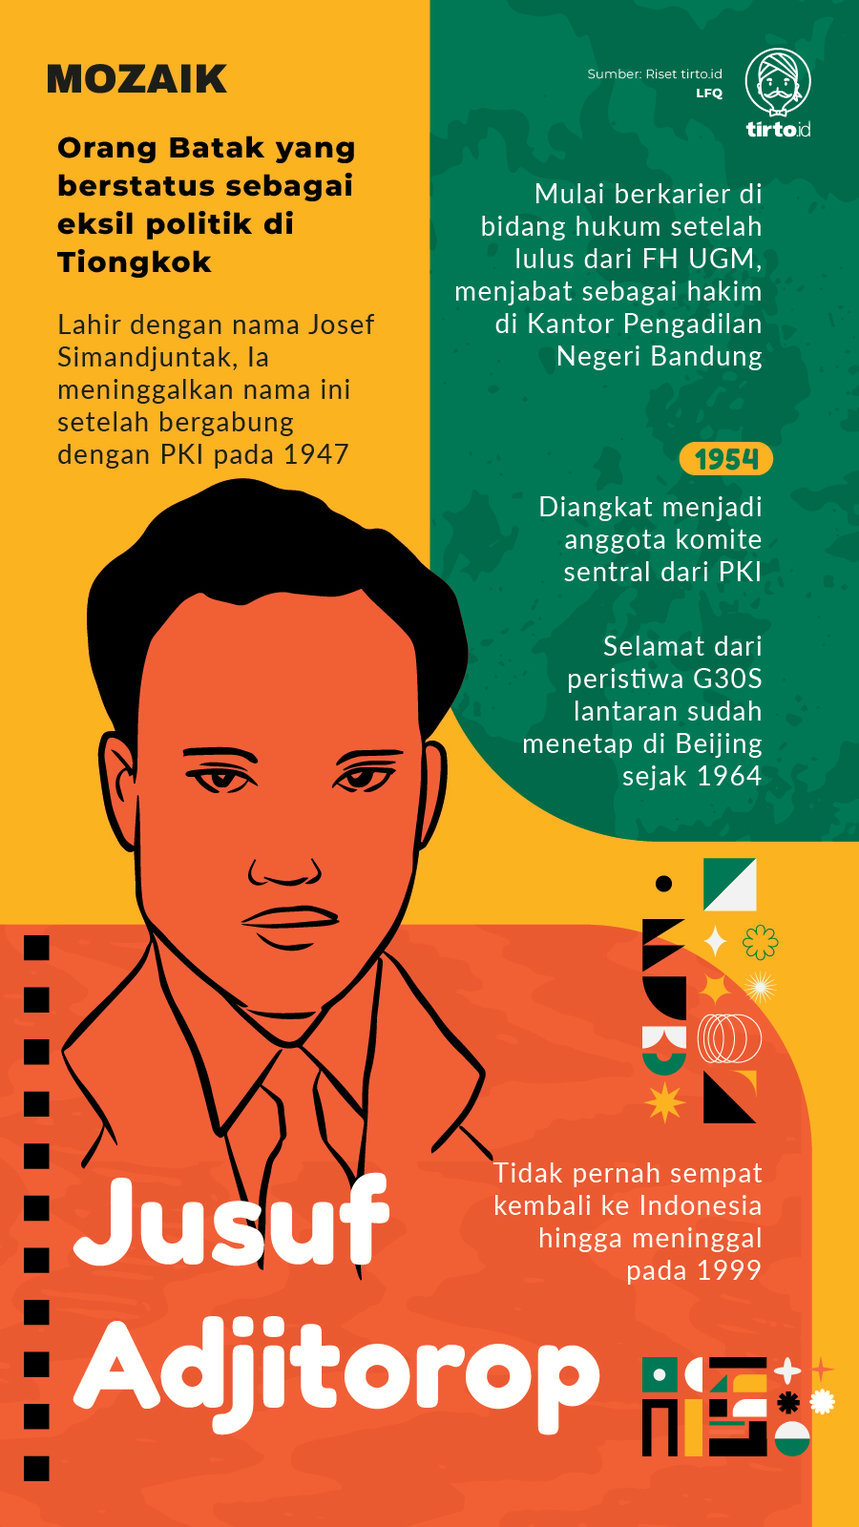 Infografik Moaik Jusuf Adjitorop